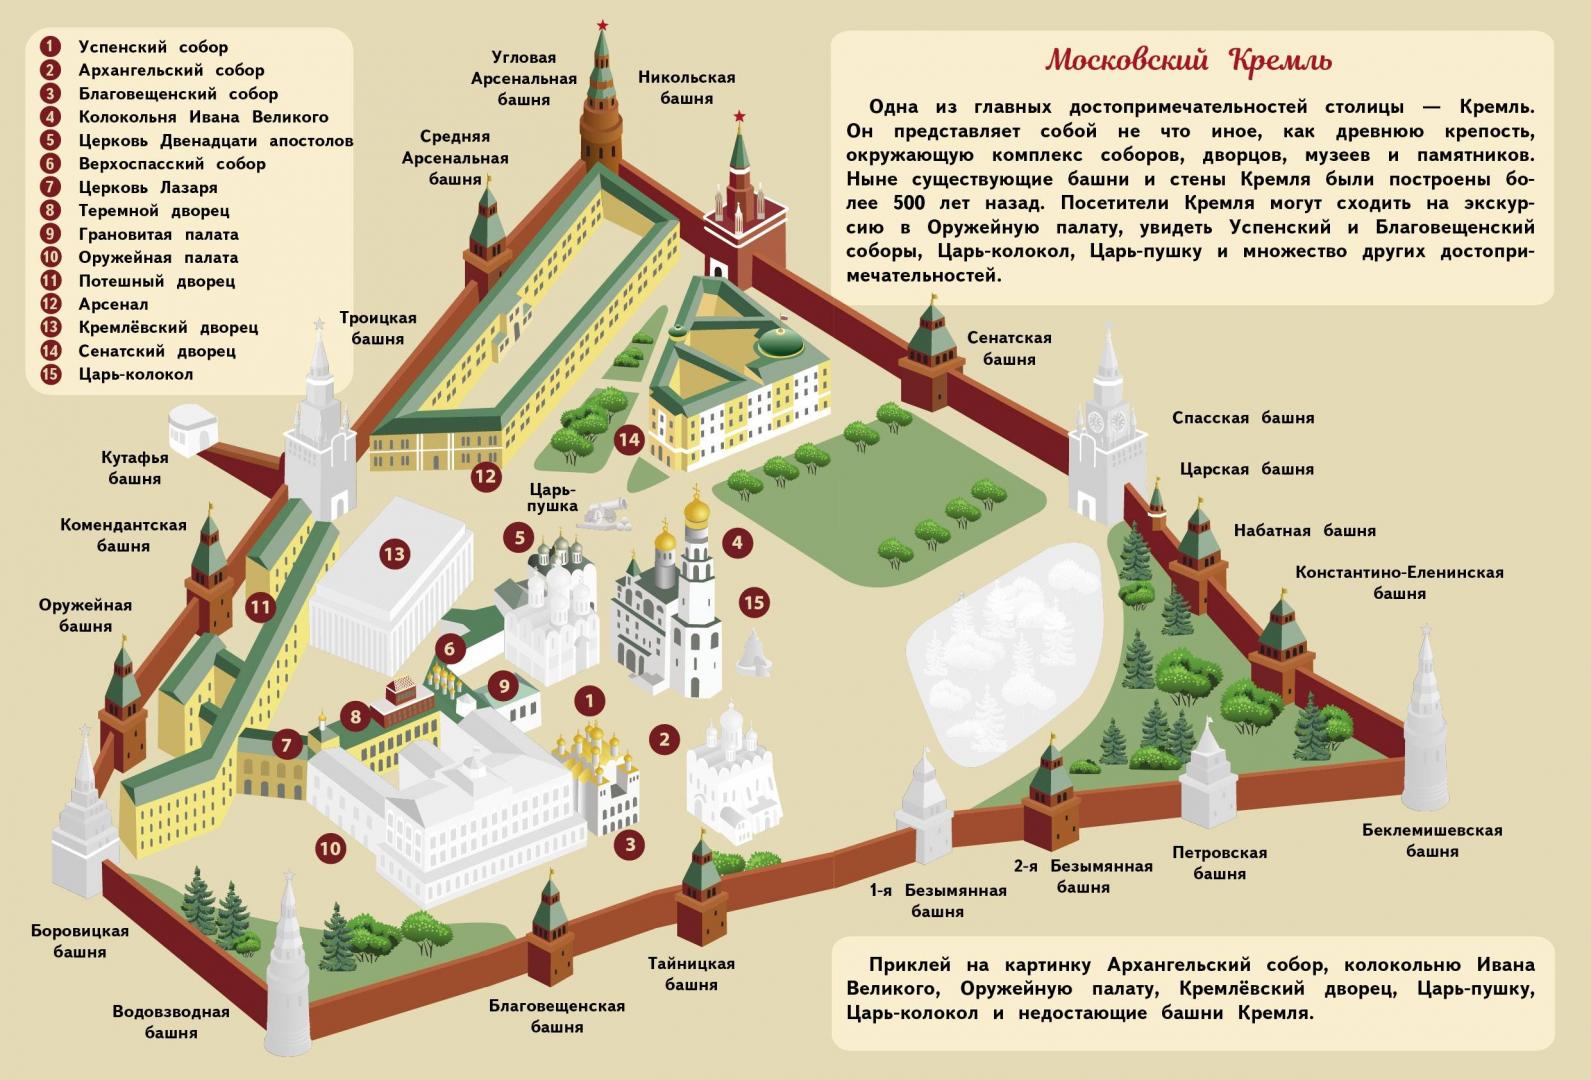 Какие достопримечательности есть на территории Московского Кремля?